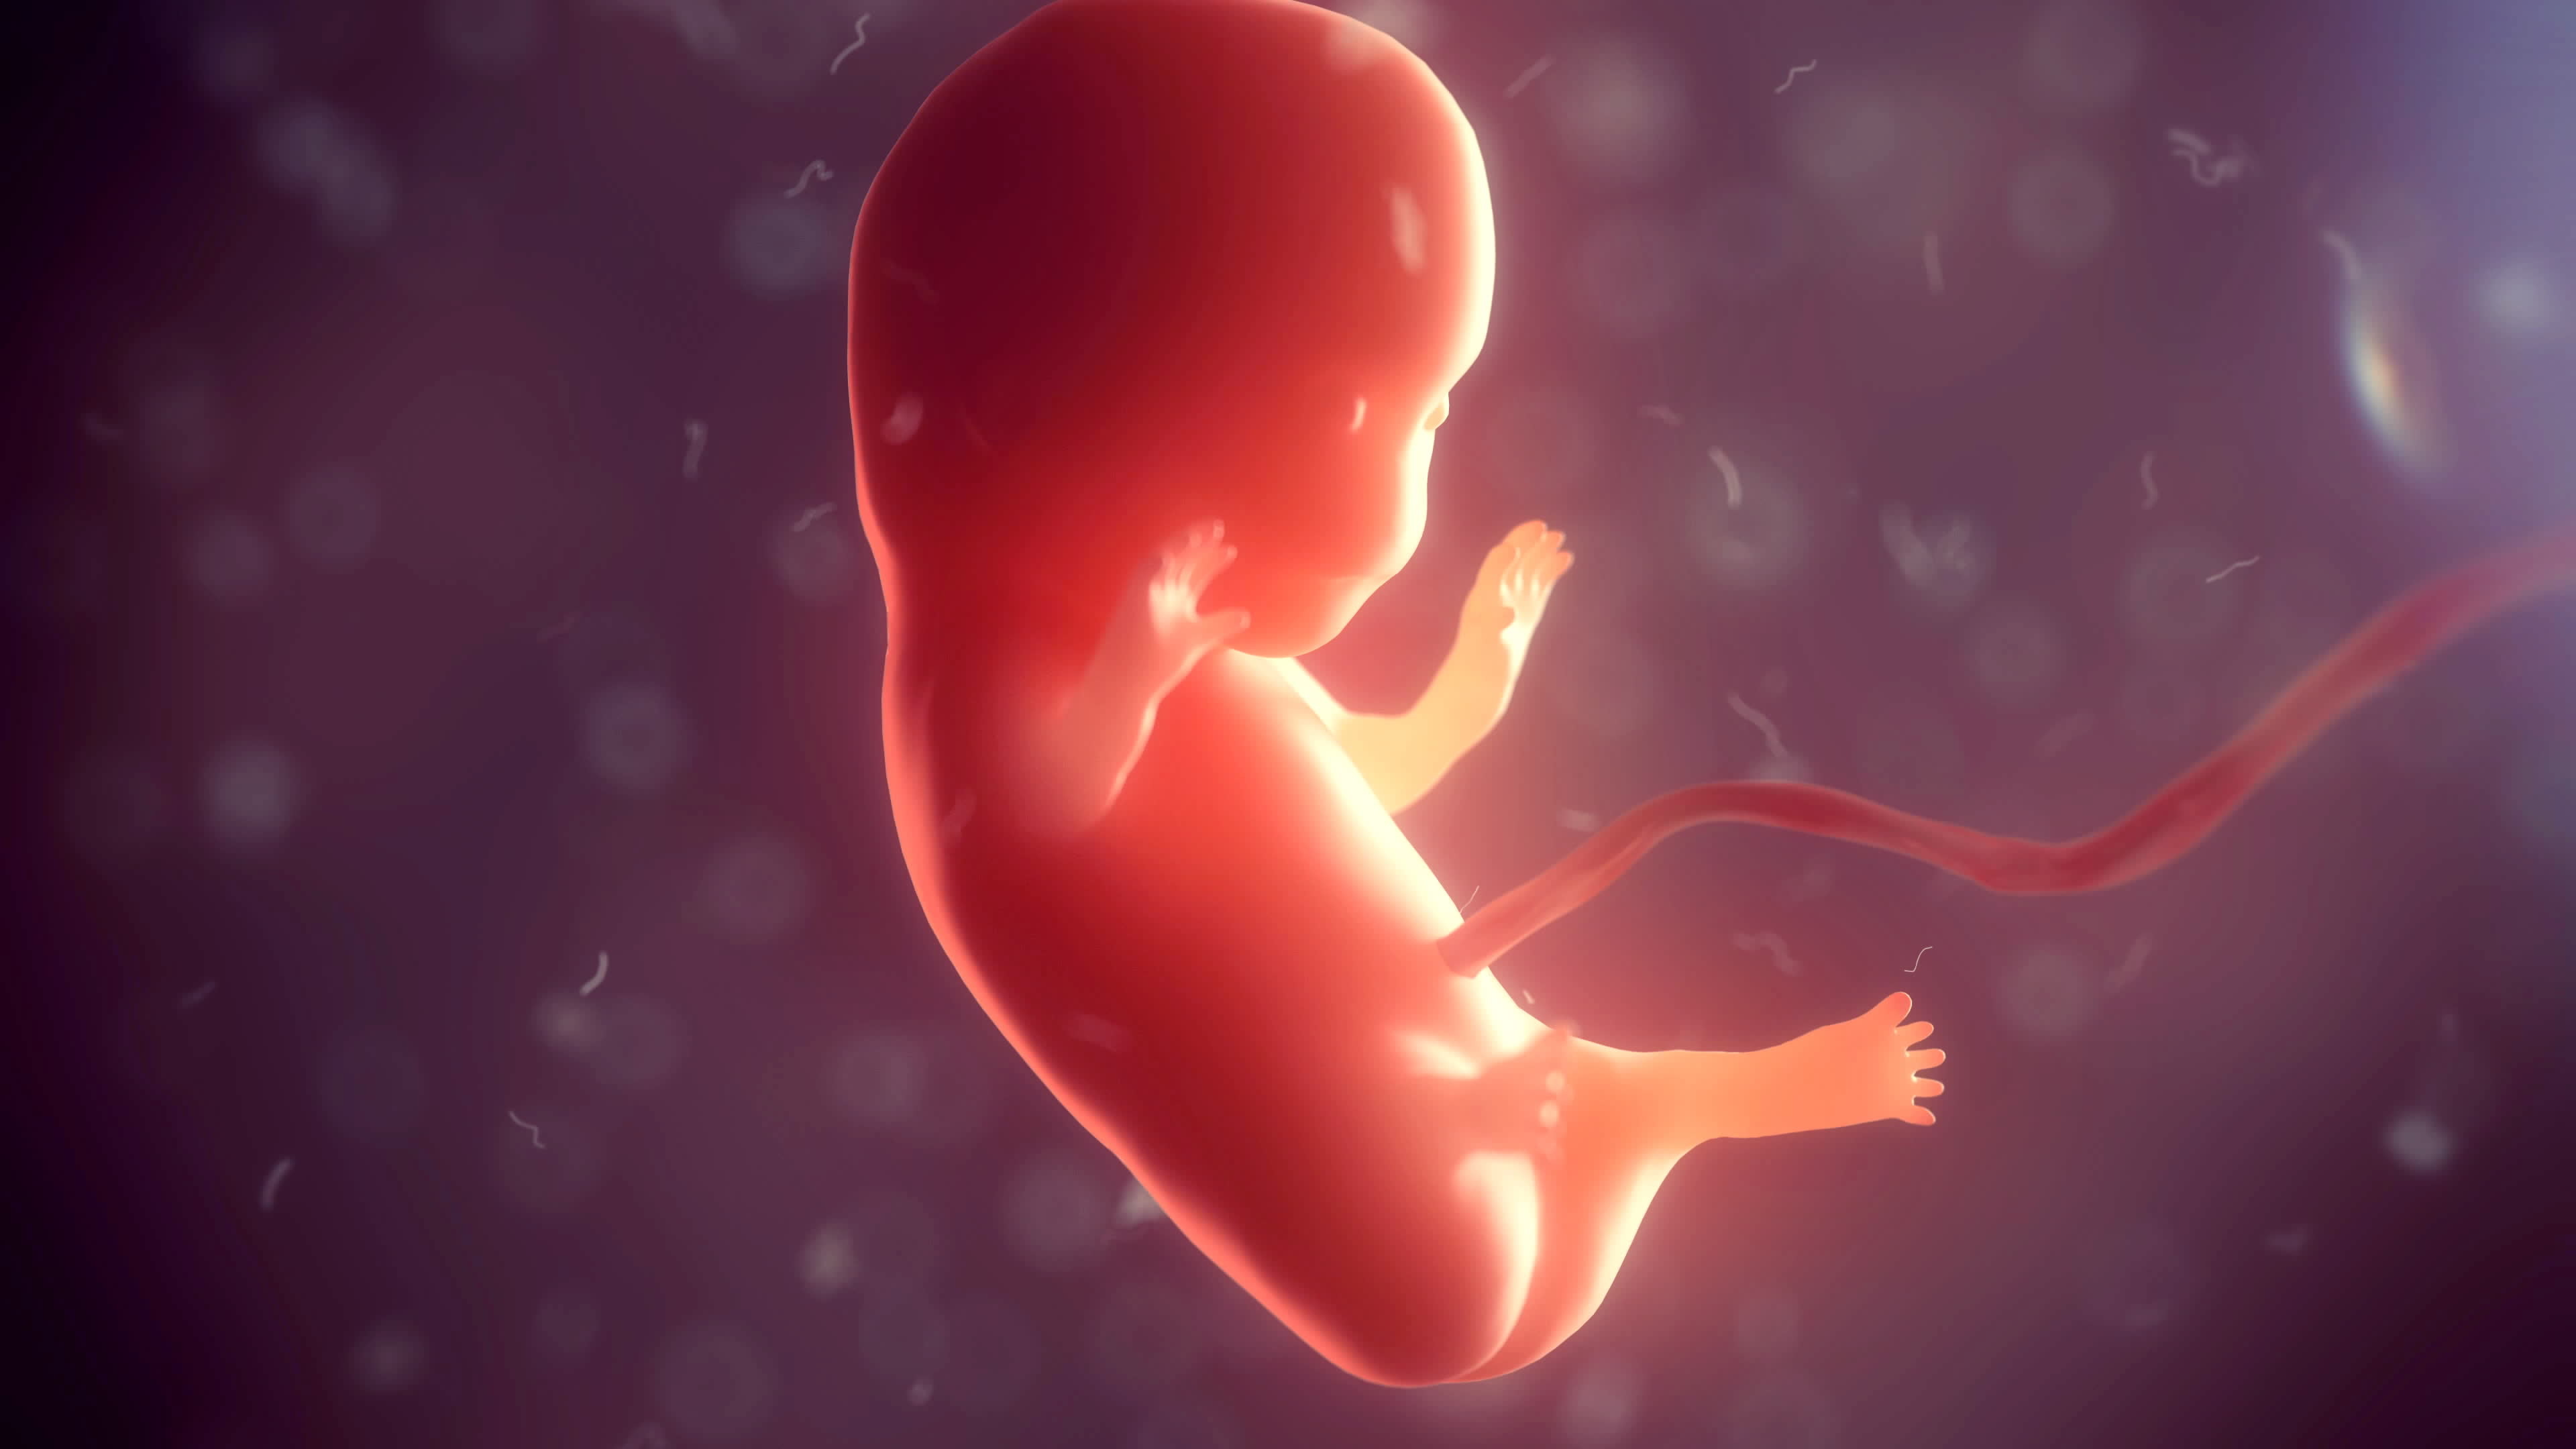 Developing fetus